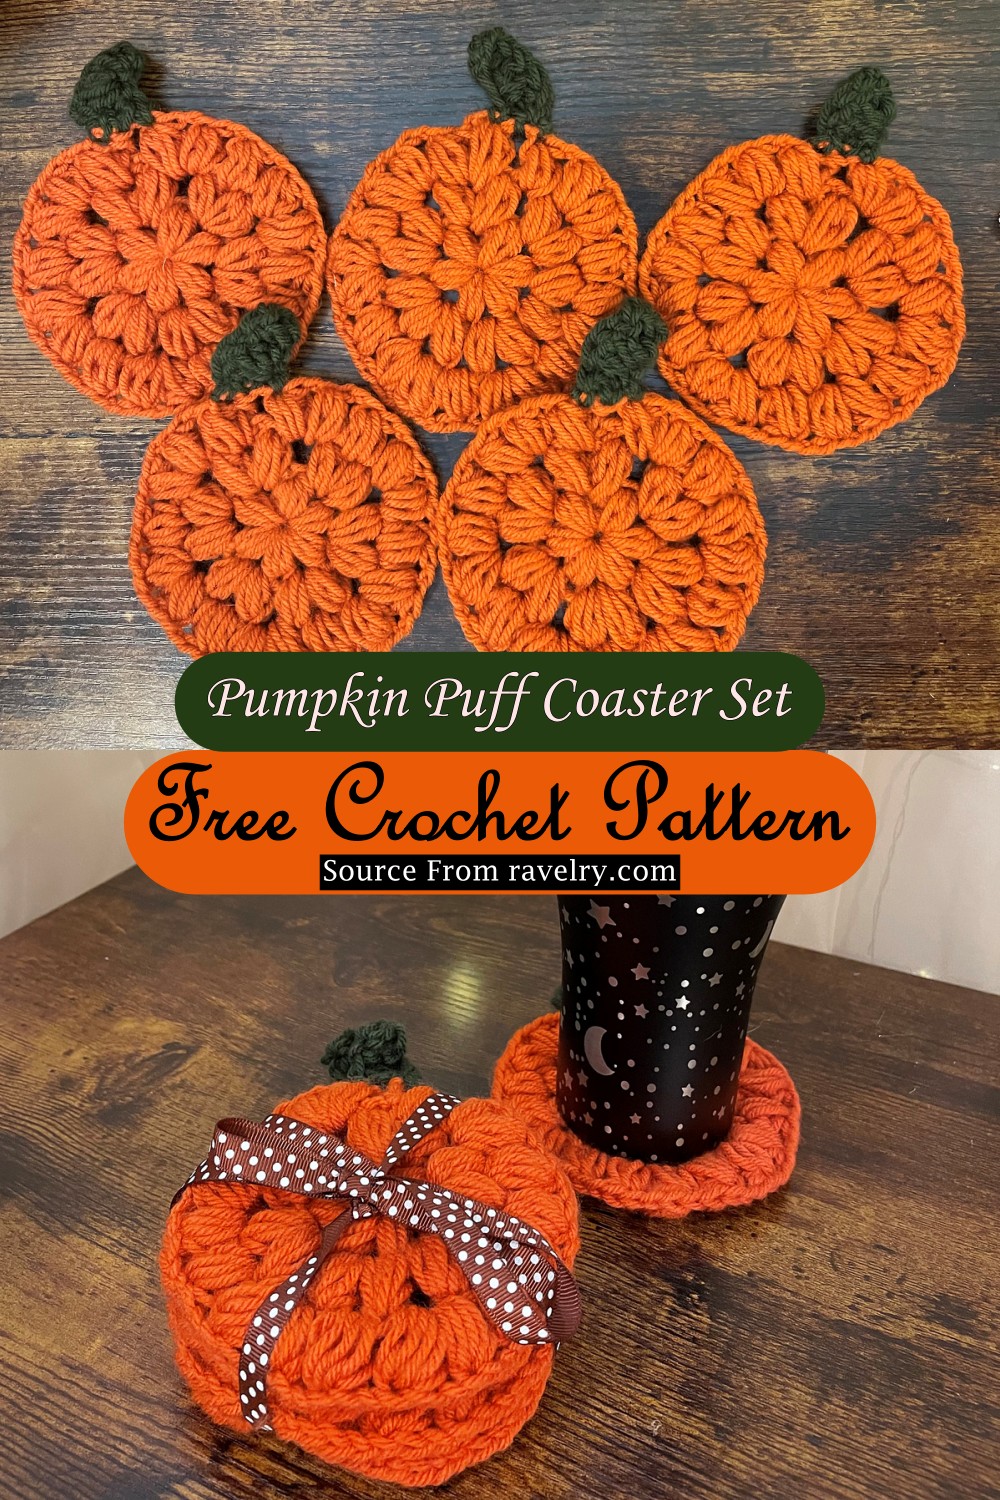 Pumpkin Puff Coaster Set